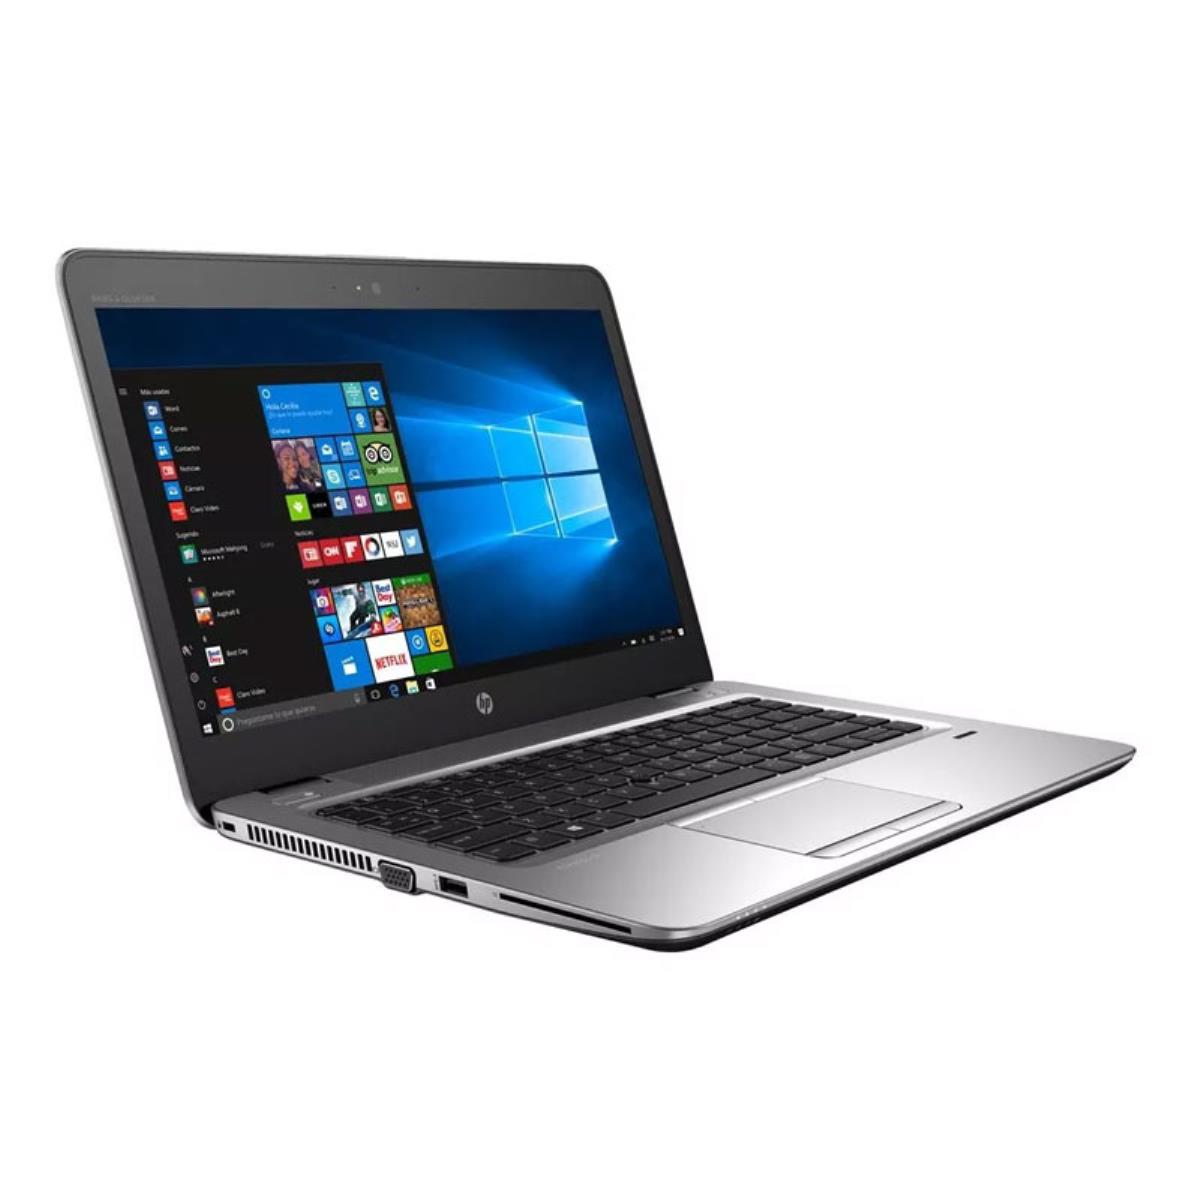 Portátil Ultrabook HP Elitebook 840 G3 GRADO A con teclado en castellano (Intel Core i5 6200U 2.3Ghz/8GB/240SSD-M.2/14HD/NO-DVD/W8P)